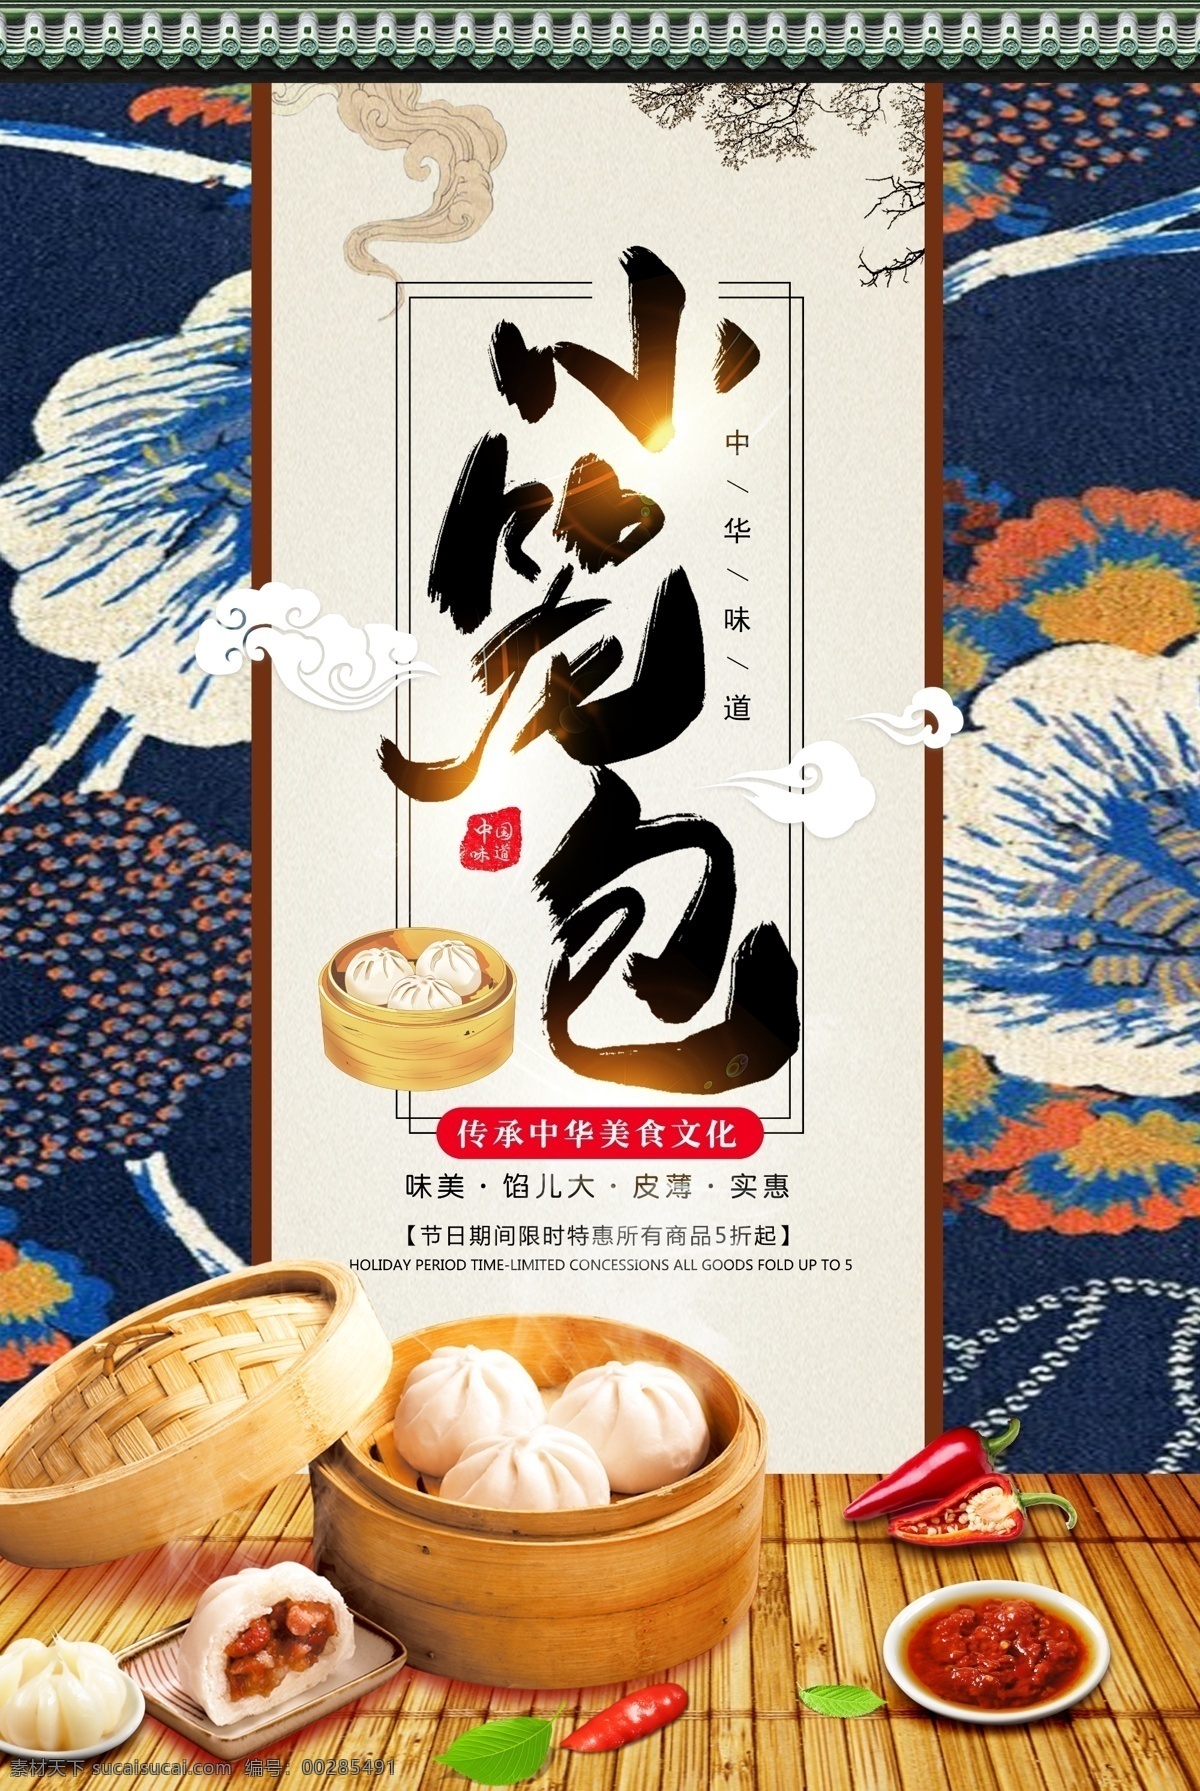 小笼包 中华美食文化 中华味道 包子 早餐海报 海报